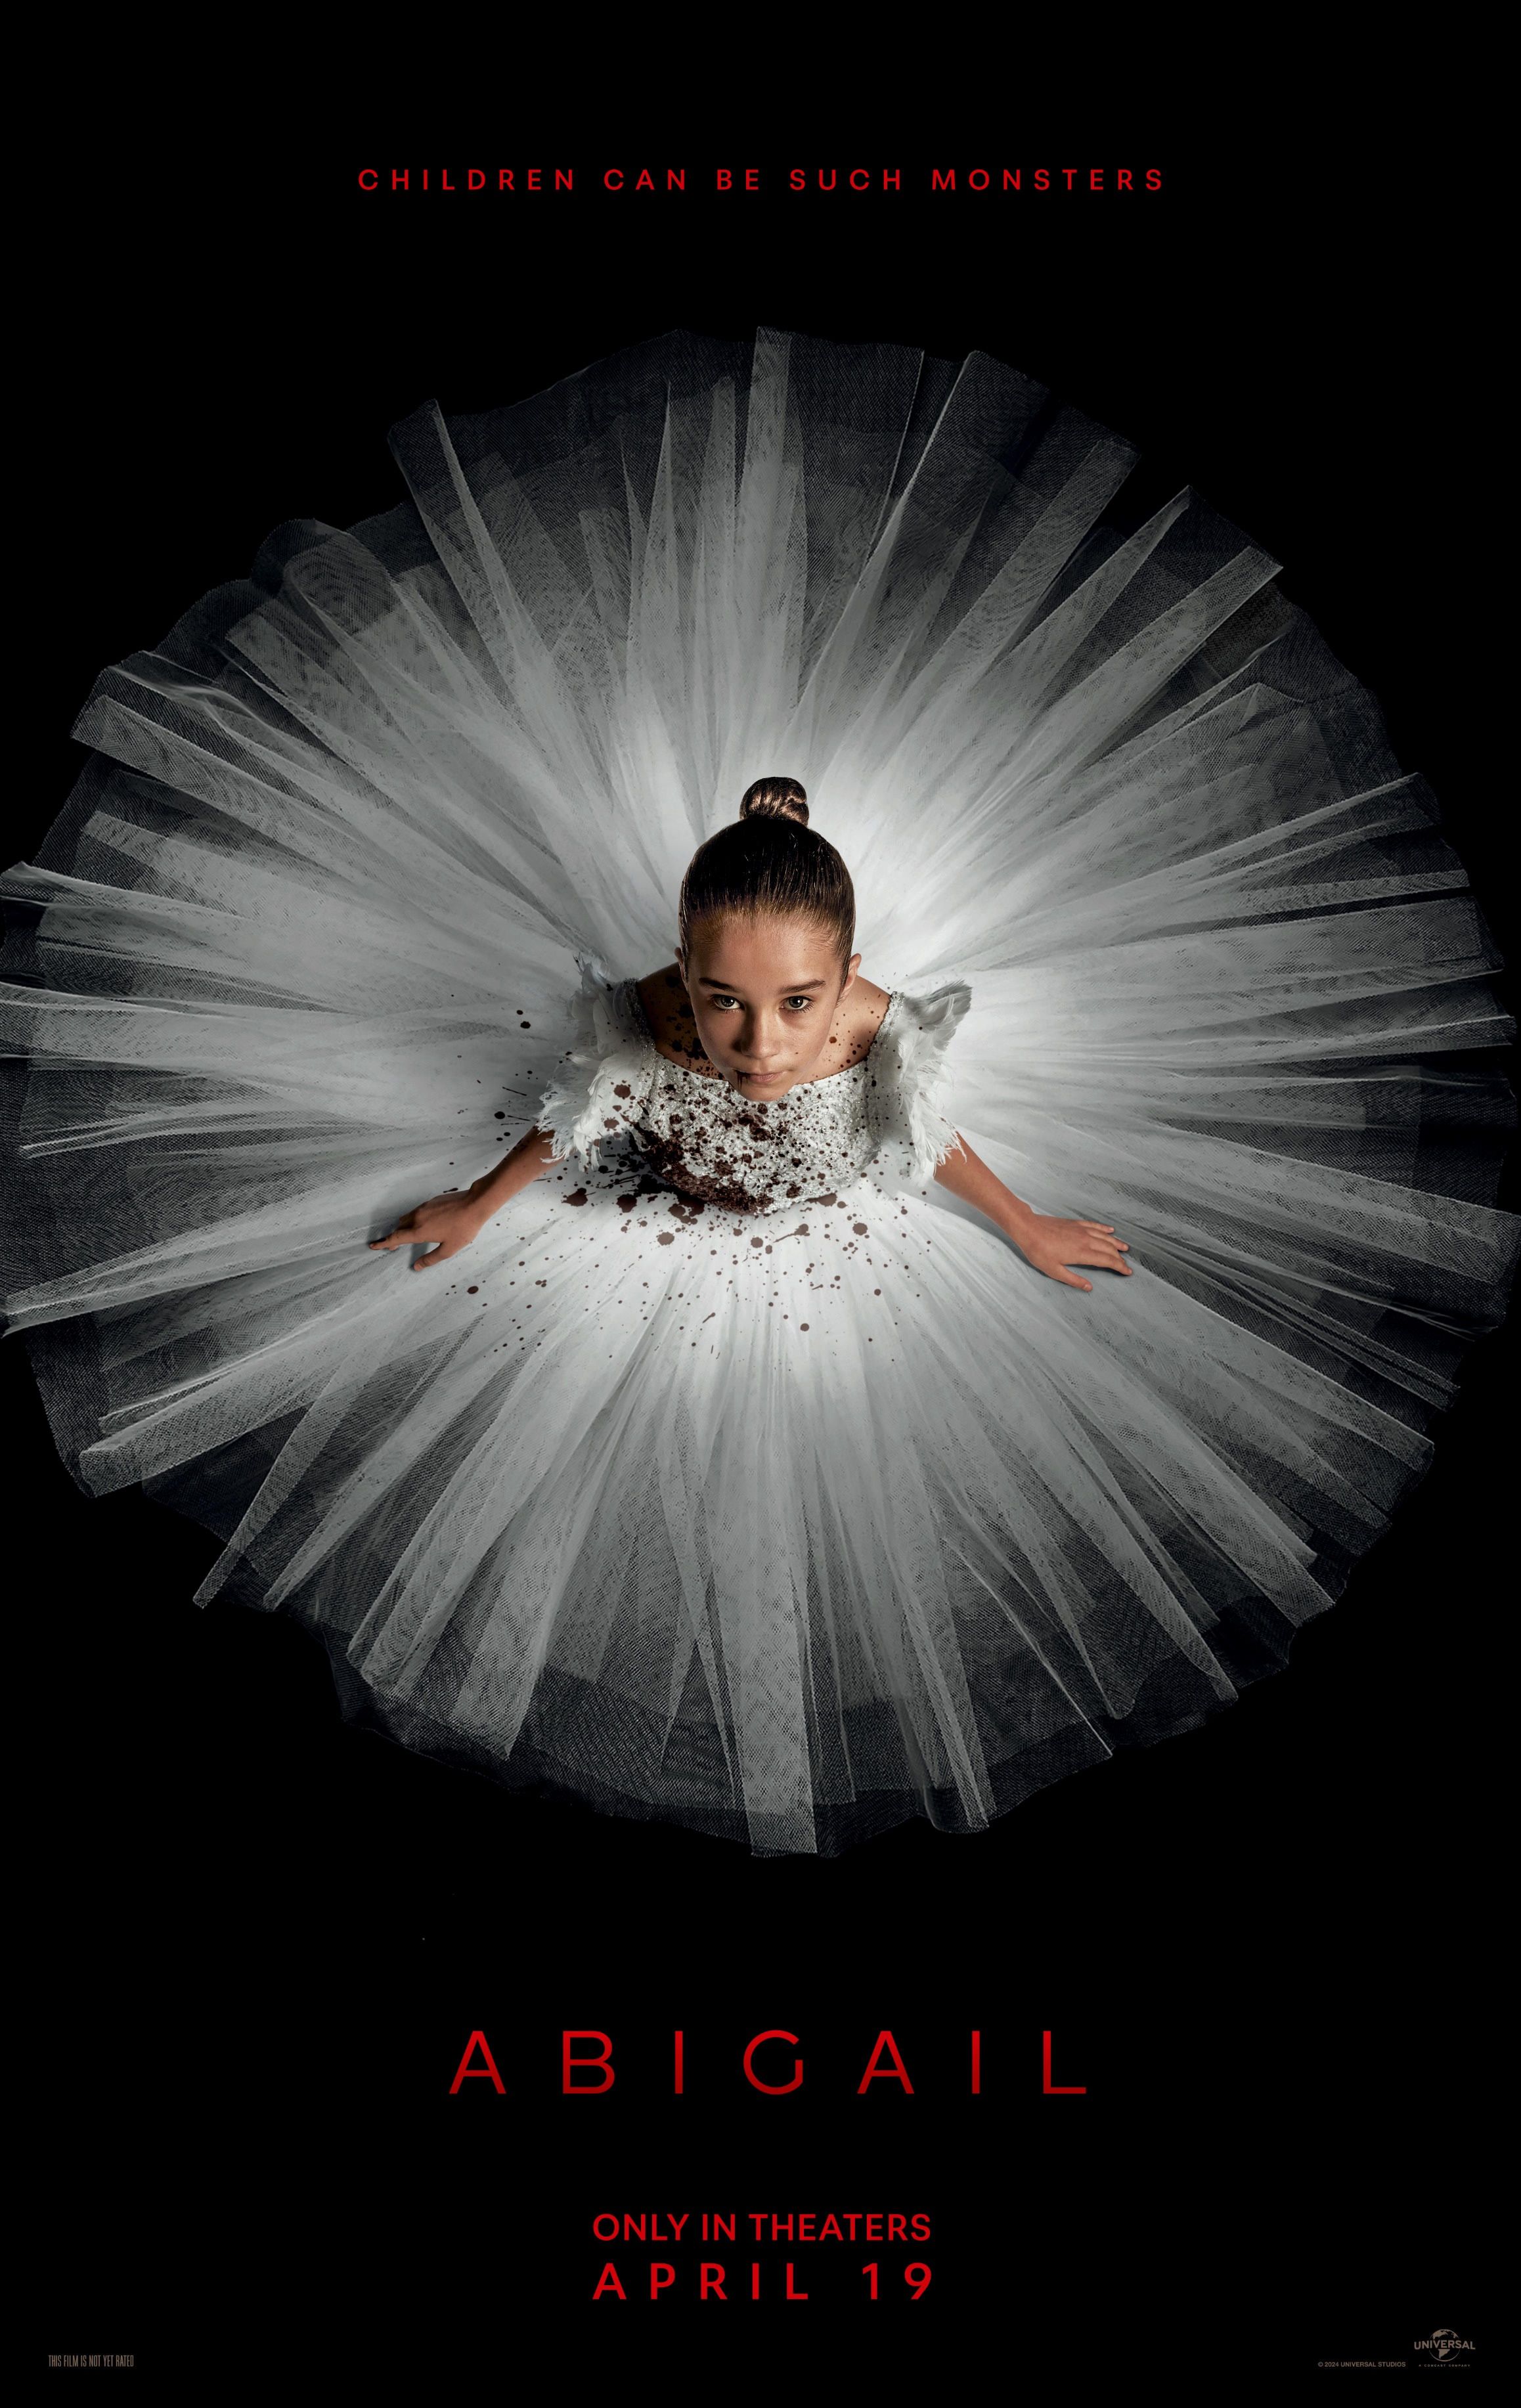 Plakat filmowy Abigail przedstawiający zakrwawioną dziewczynkę ubraną w sukienkę baletnicy